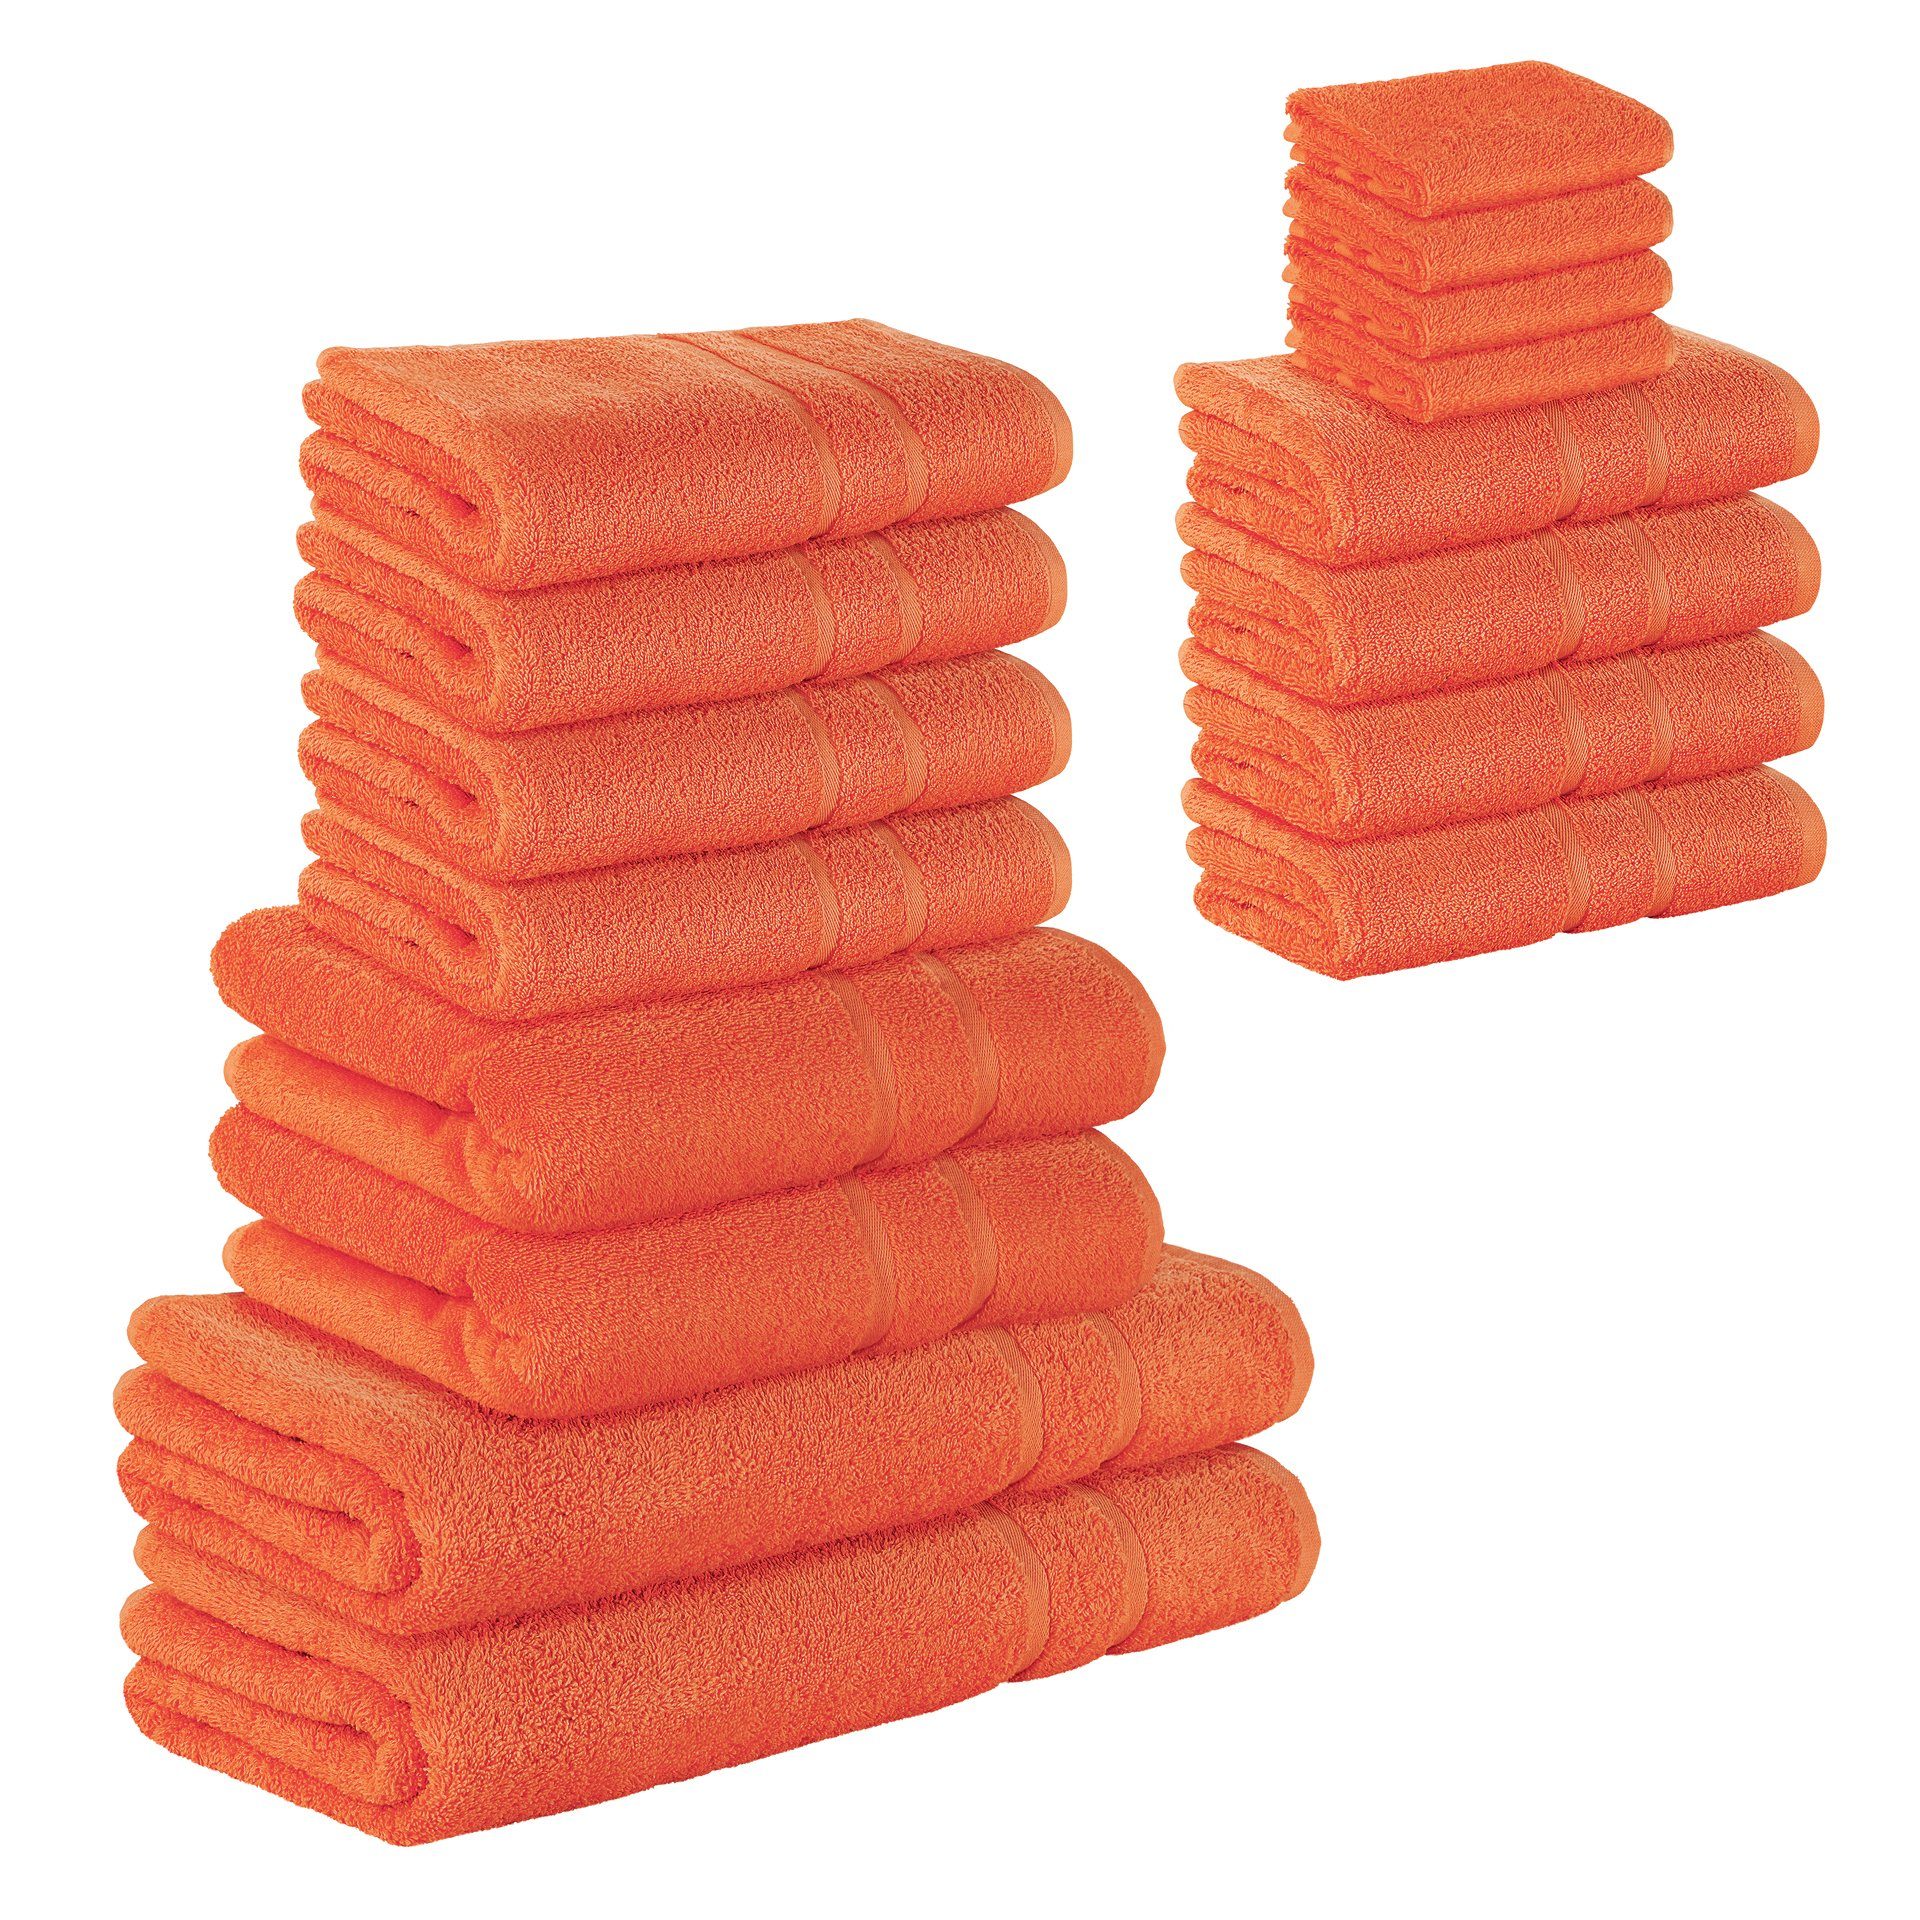 StickandShine Handtuch Set 4x Gästehandtuch 4x Handtücher 4x Duschtücher 2x Badetücher 2x Saunatücher als SET in verschiedenen Farben (16 Teilig) 100% Baumwolle 500 GSM Frottee 16er Handtuch Pack, 100% Baumwolle Orange | Handtuch-Sets